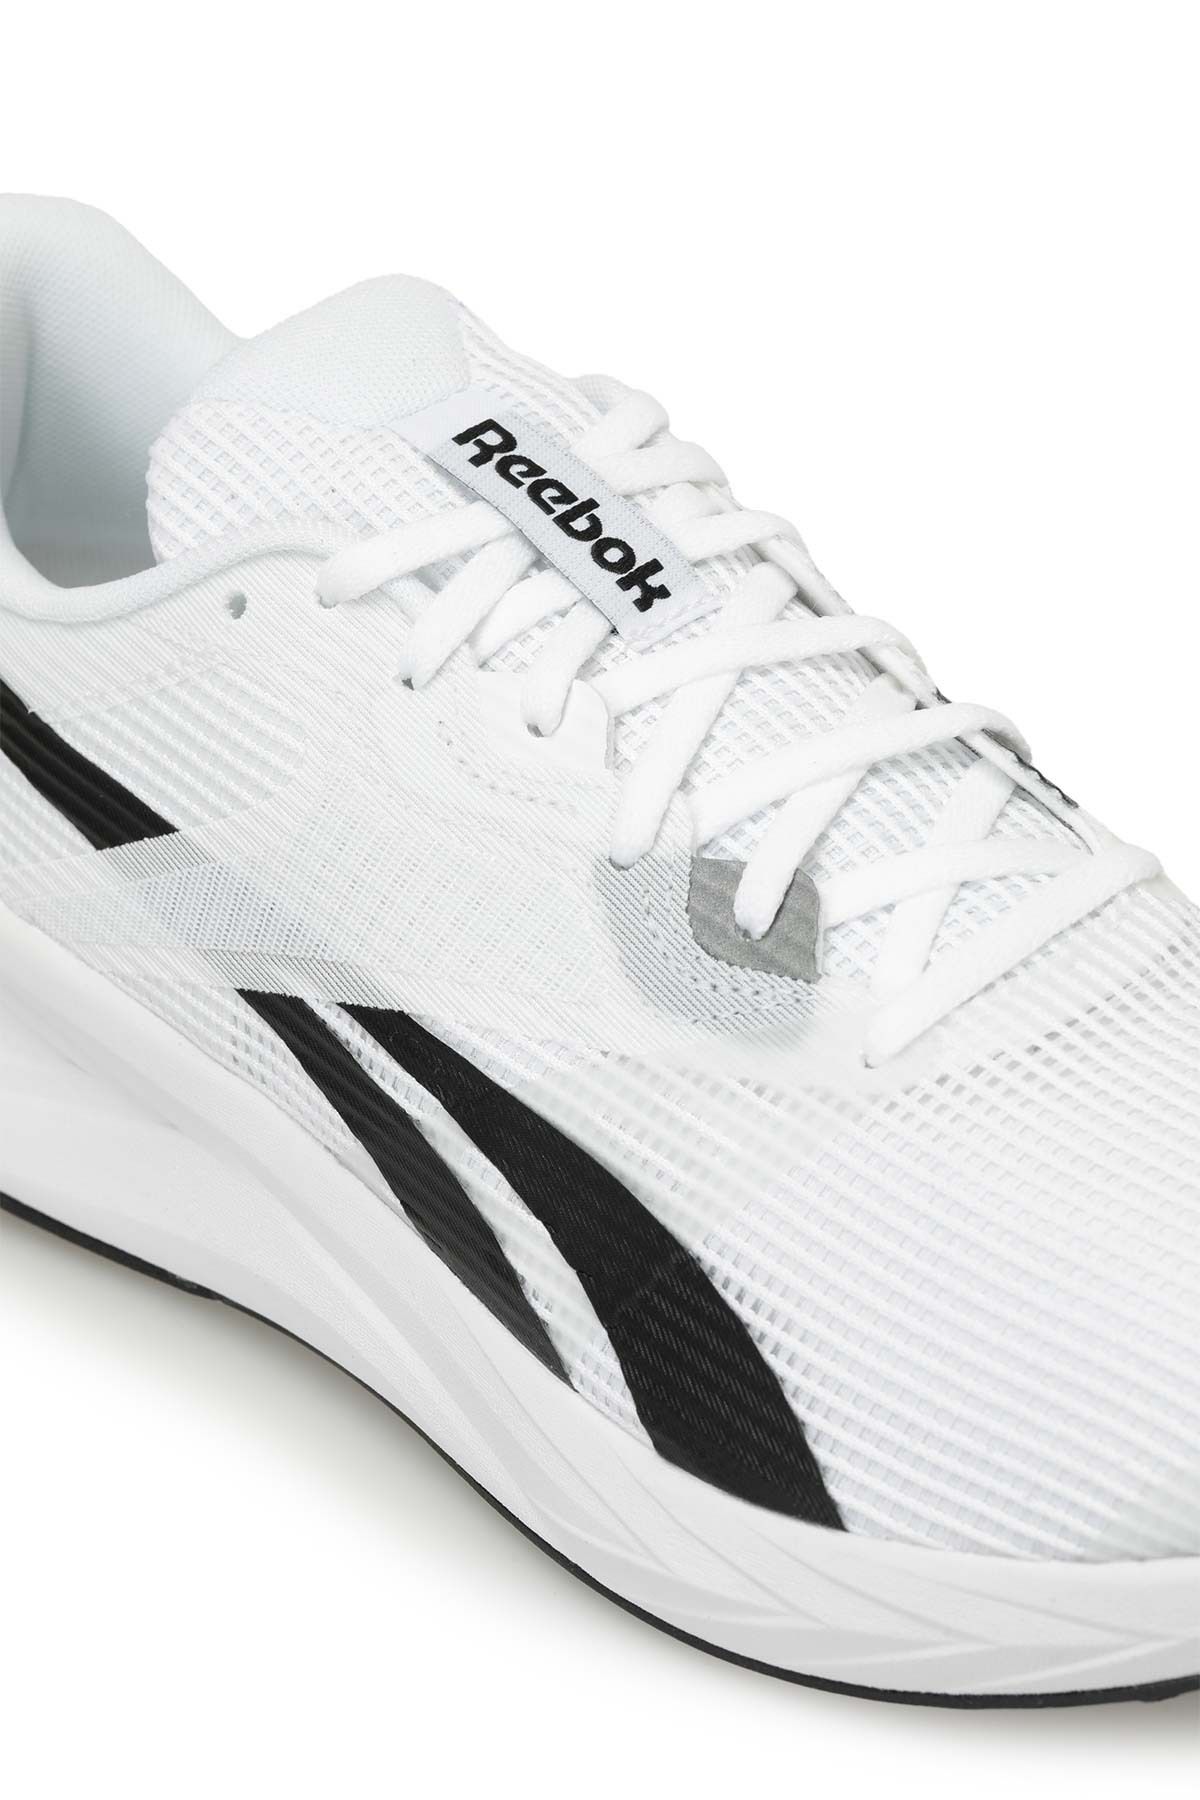 Reebok Energen Tech به علاوه کفش یونیسکس سفید